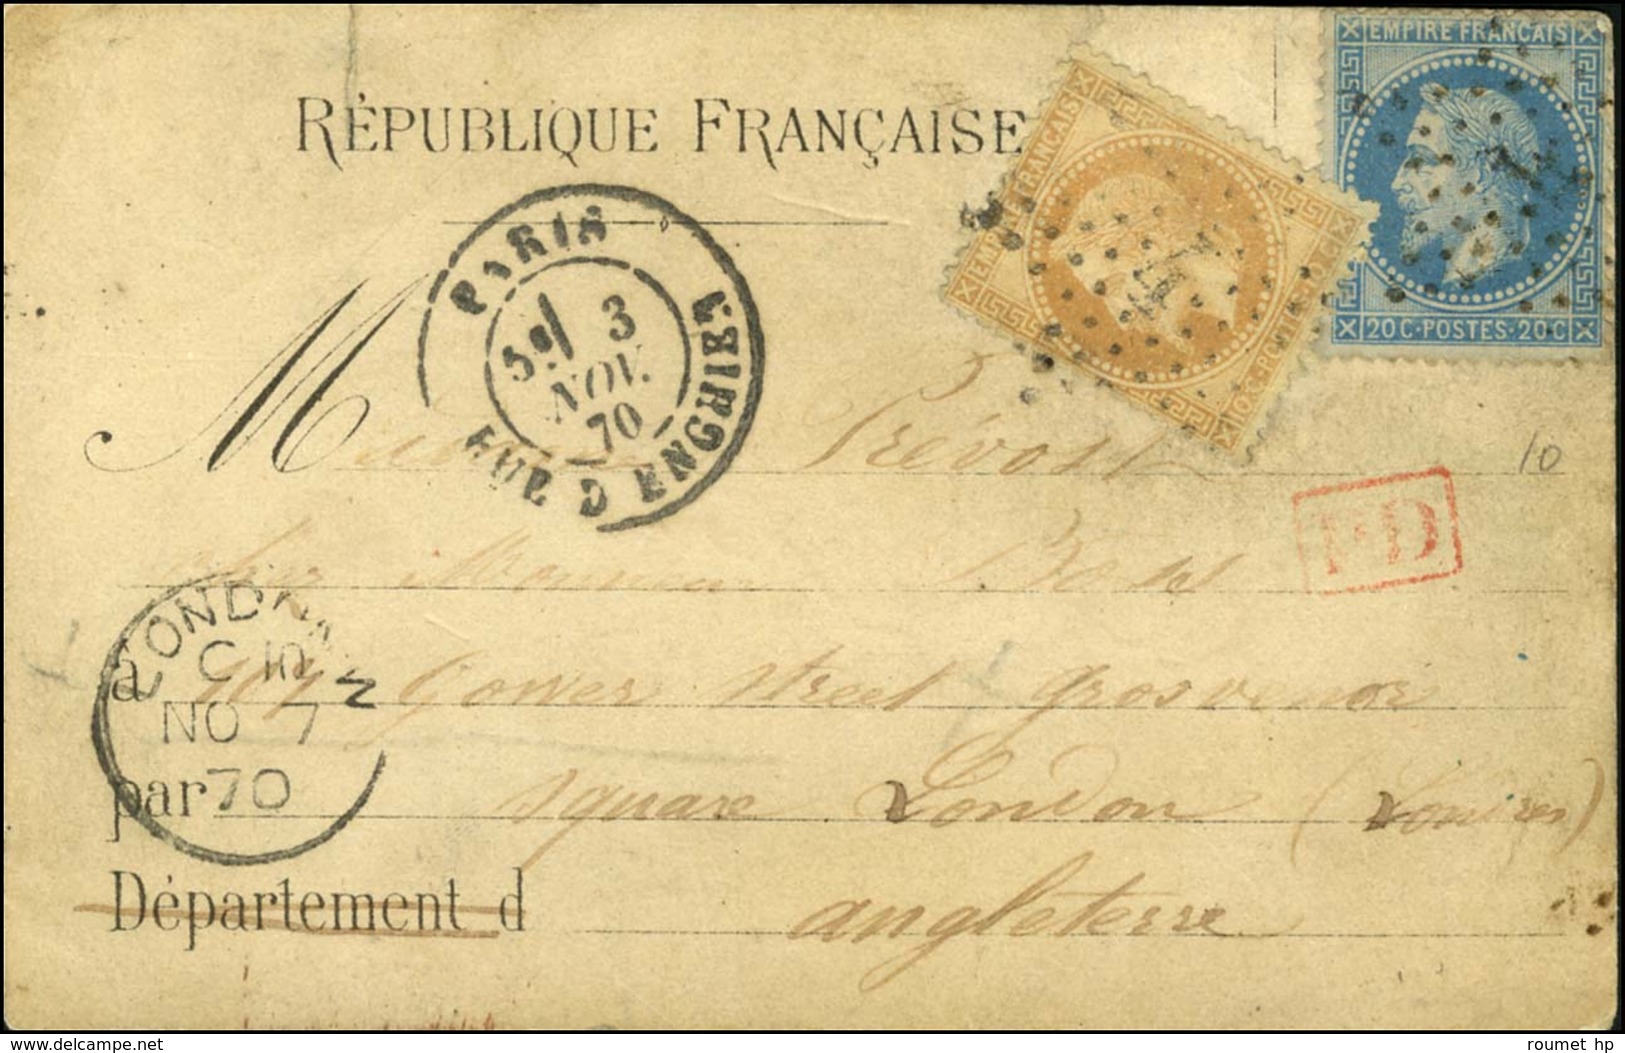 Etoile 4 / N° 28 + 29 Càd PARIS / RUE D'ENGHIEN 3 NOV. 70 Sur Carte REPUBLIQUE FRANCAISE , Au Recto CORRESPONDANCE AERIE - War 1870